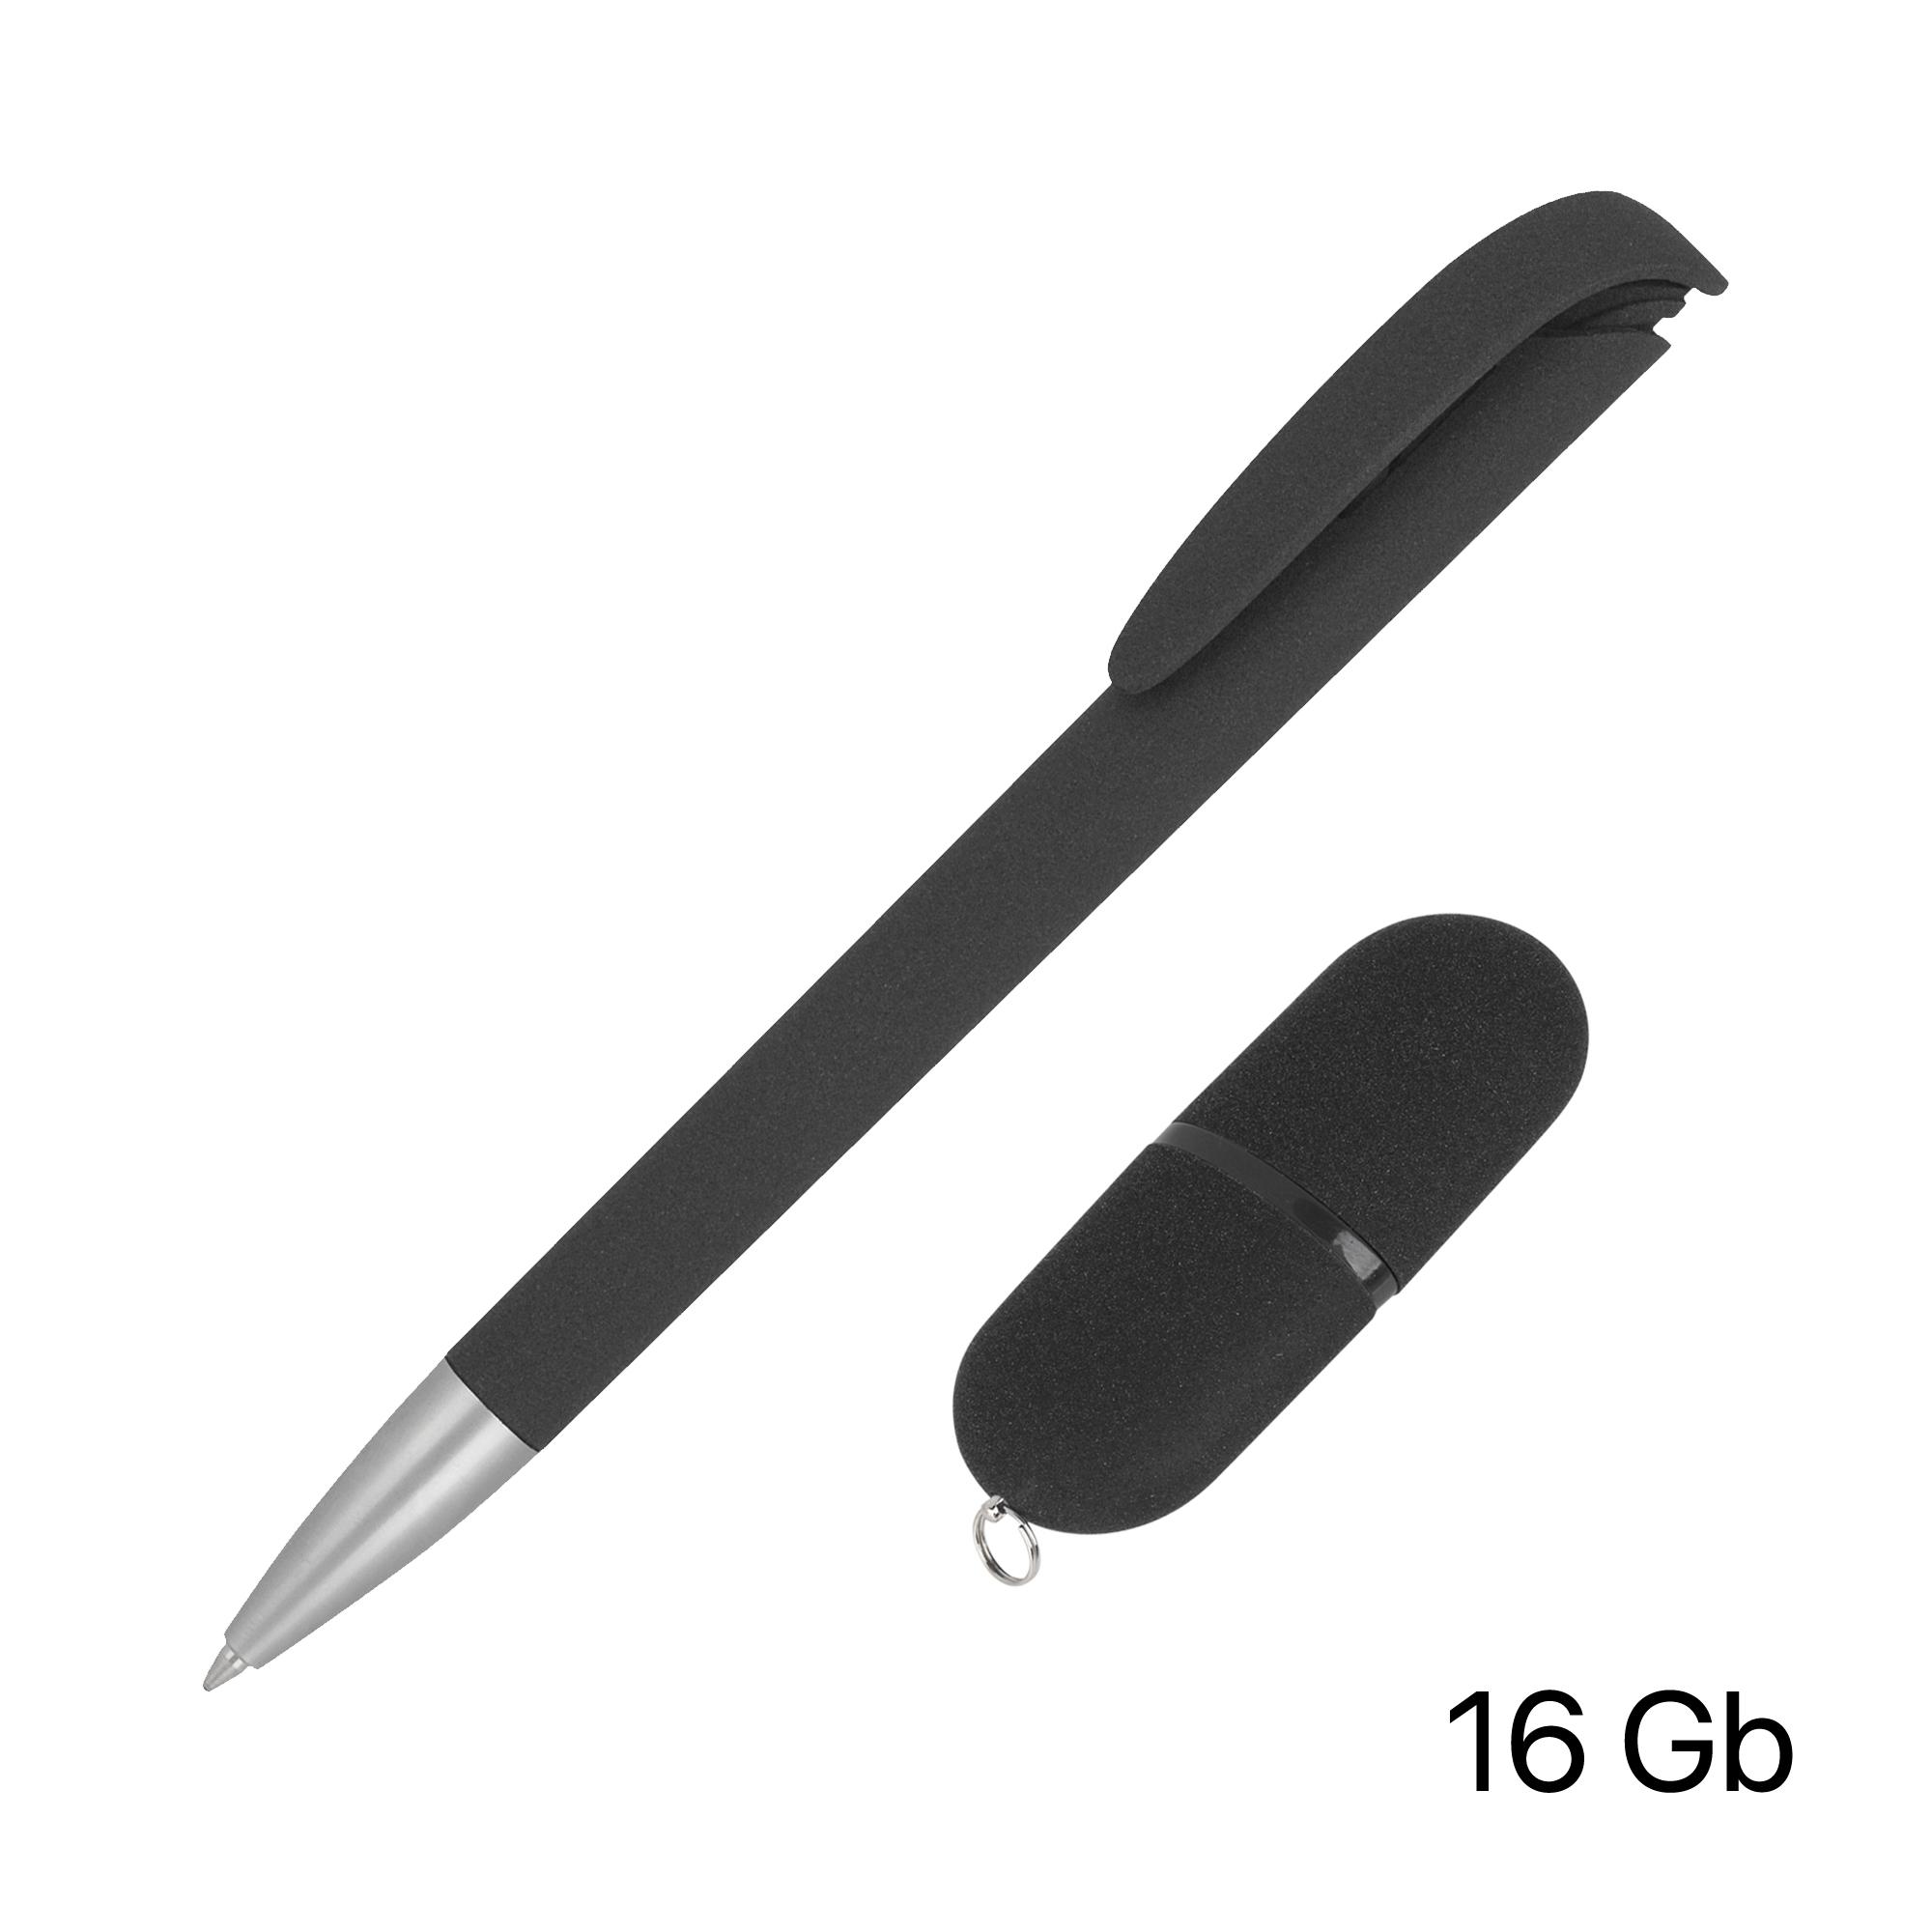 Набор ручка + флеш-карта 16 Гб в футляре, черный, покрытие soft grip, цвет черный, фото 1